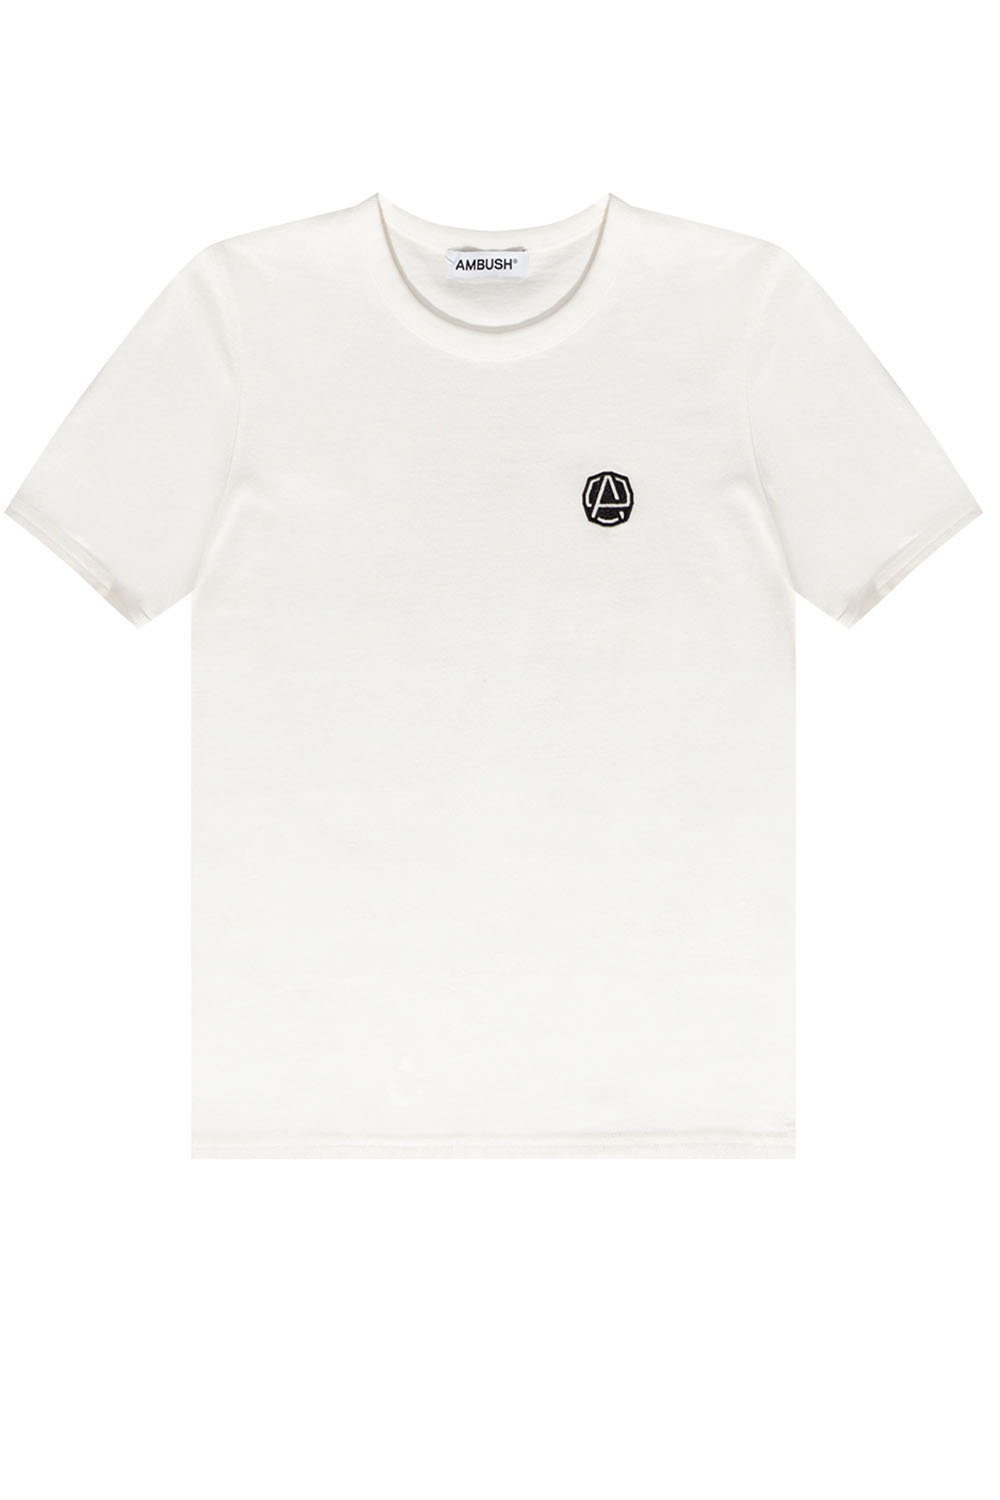 Ambush This casual T-shirt brings a bold yet minimal look to Kids wardrobe